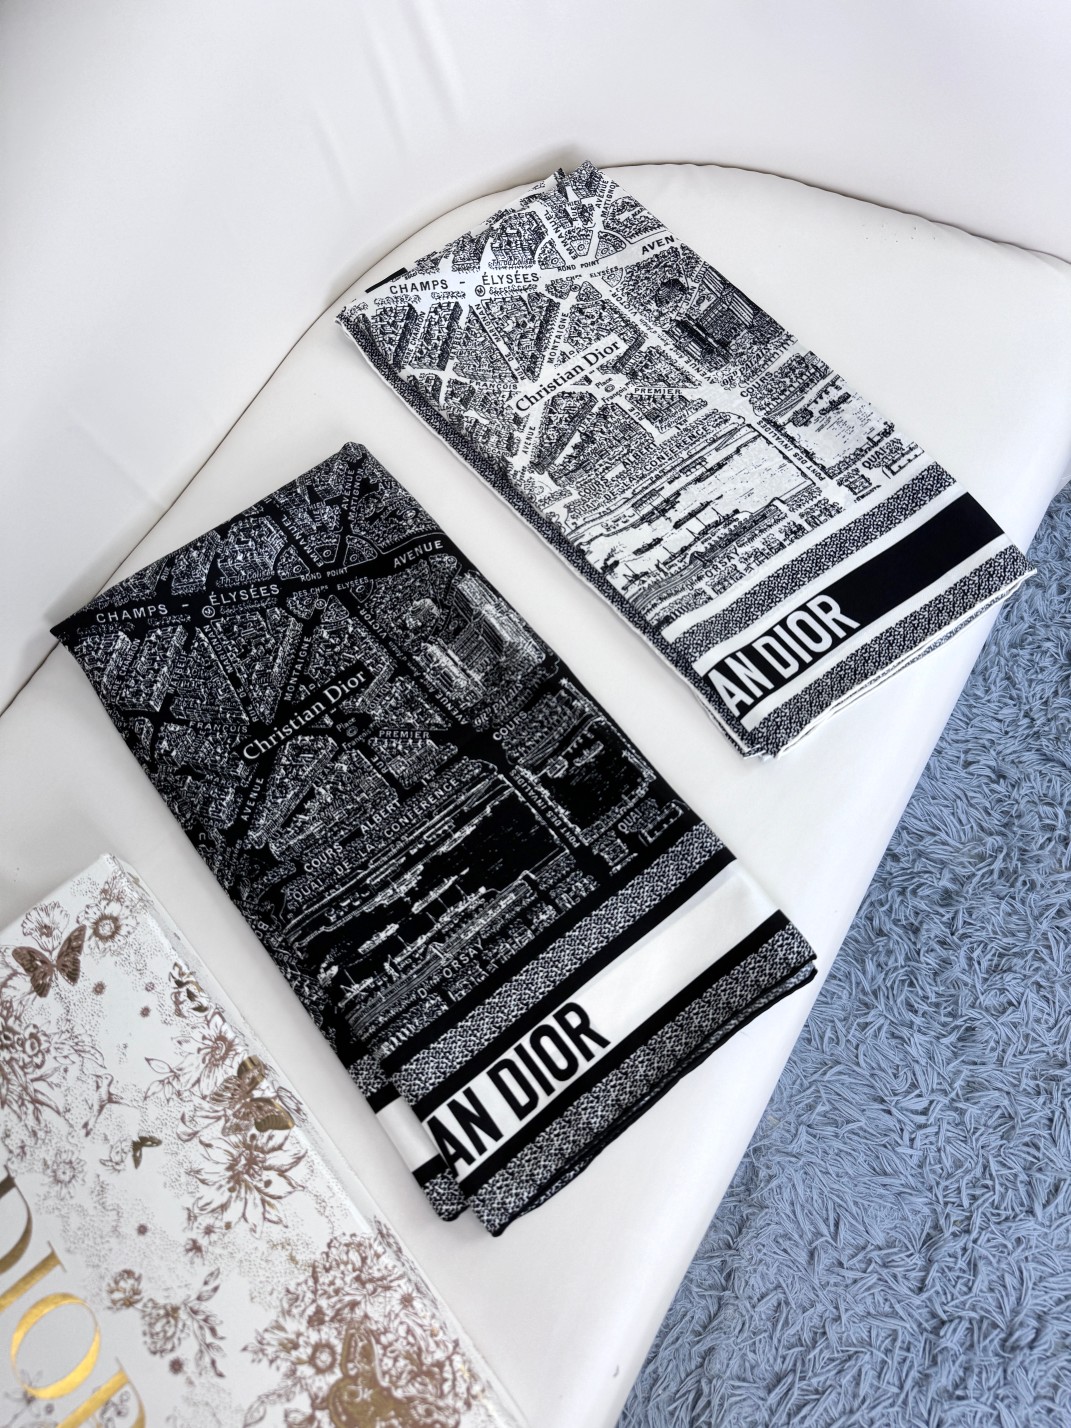 品名:巴黎地图面料真丝尺寸90*90颜色黑色白色这款方巾饰以本季经典的PlandeParis印花该图案从